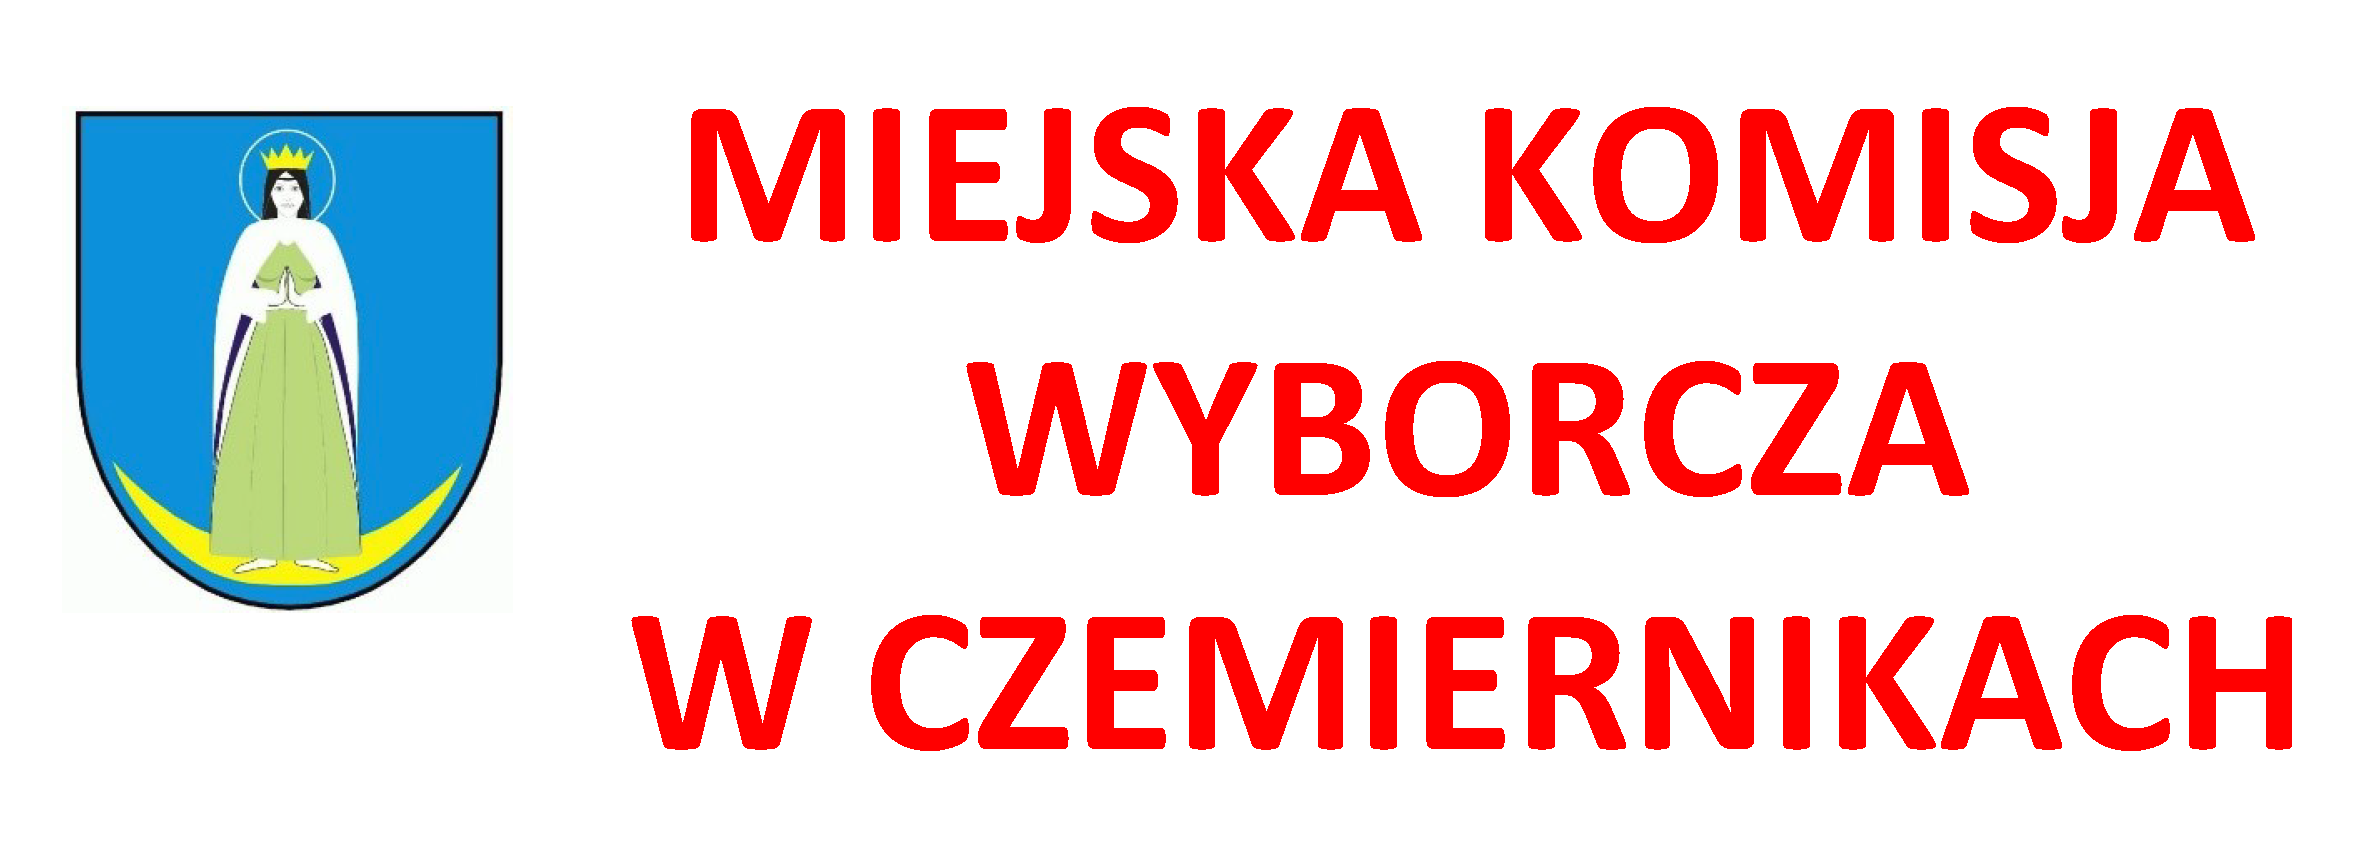 Logo z napisem Miejska Komisja Wyborcza w Czemiernikach, umieszczono herb gminy Czemierniki